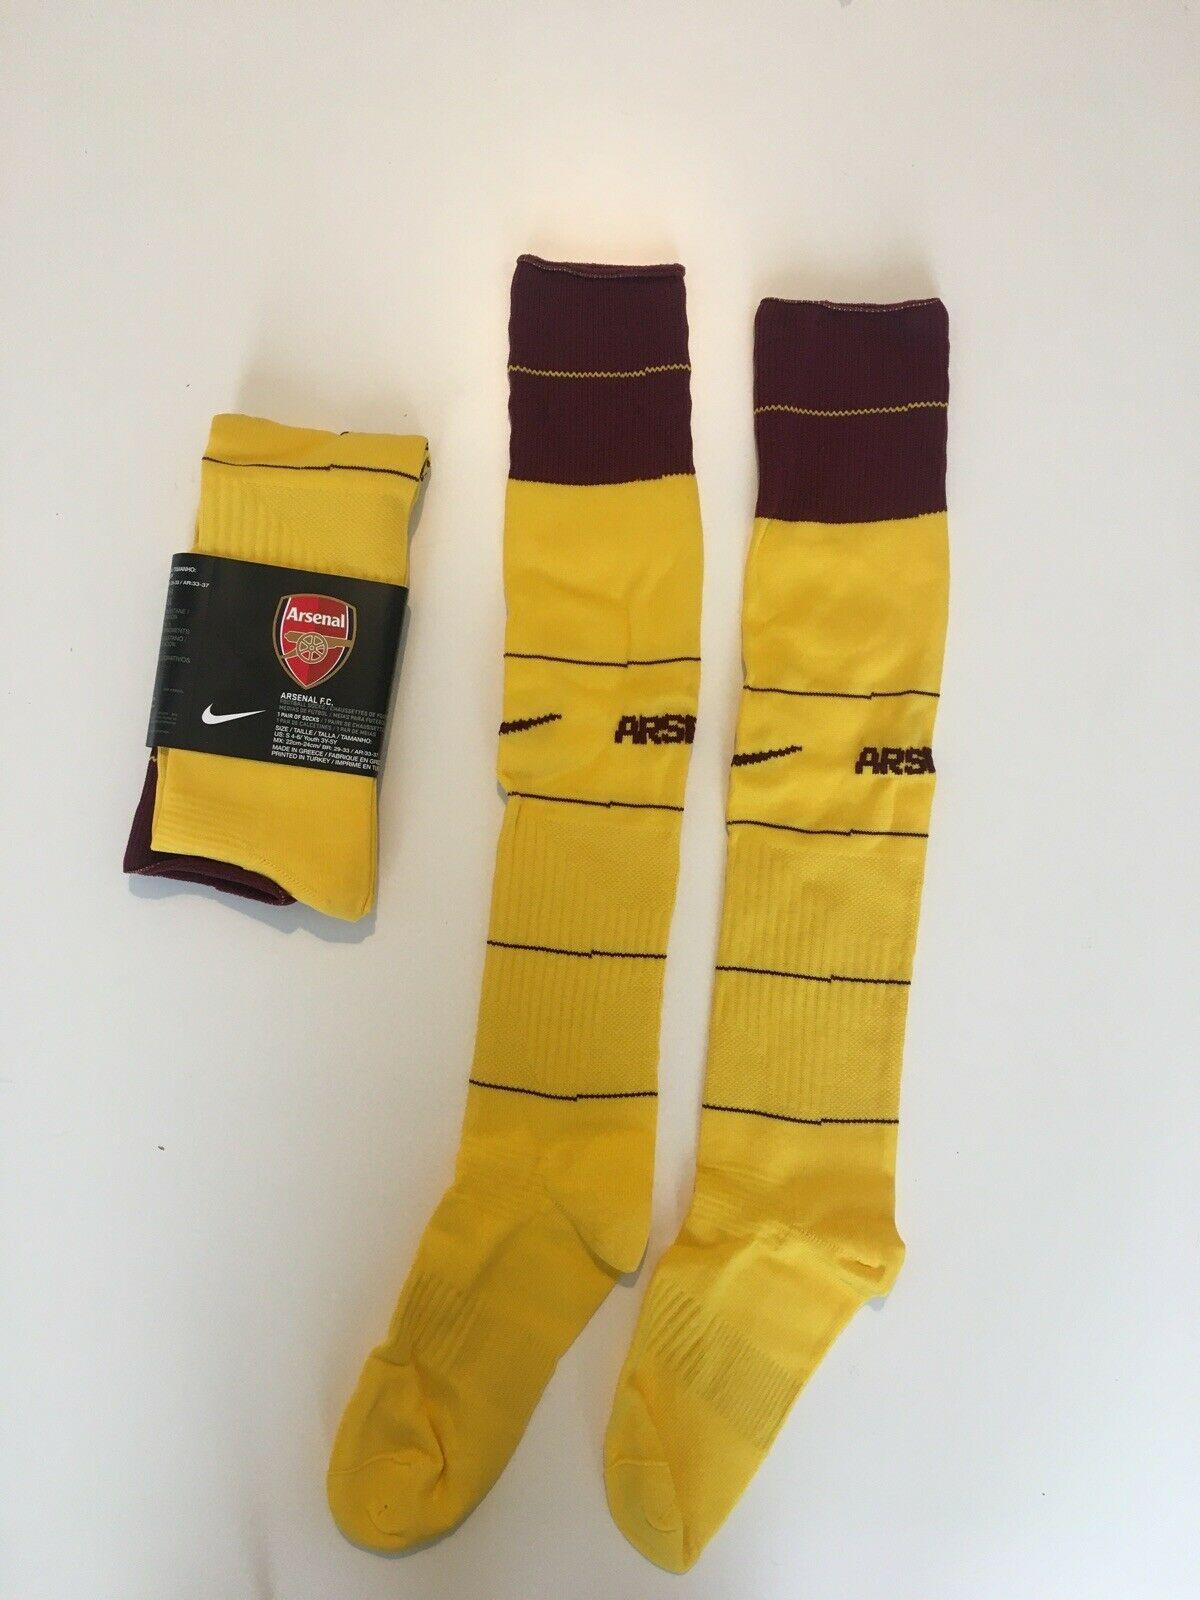 arsenal football socks